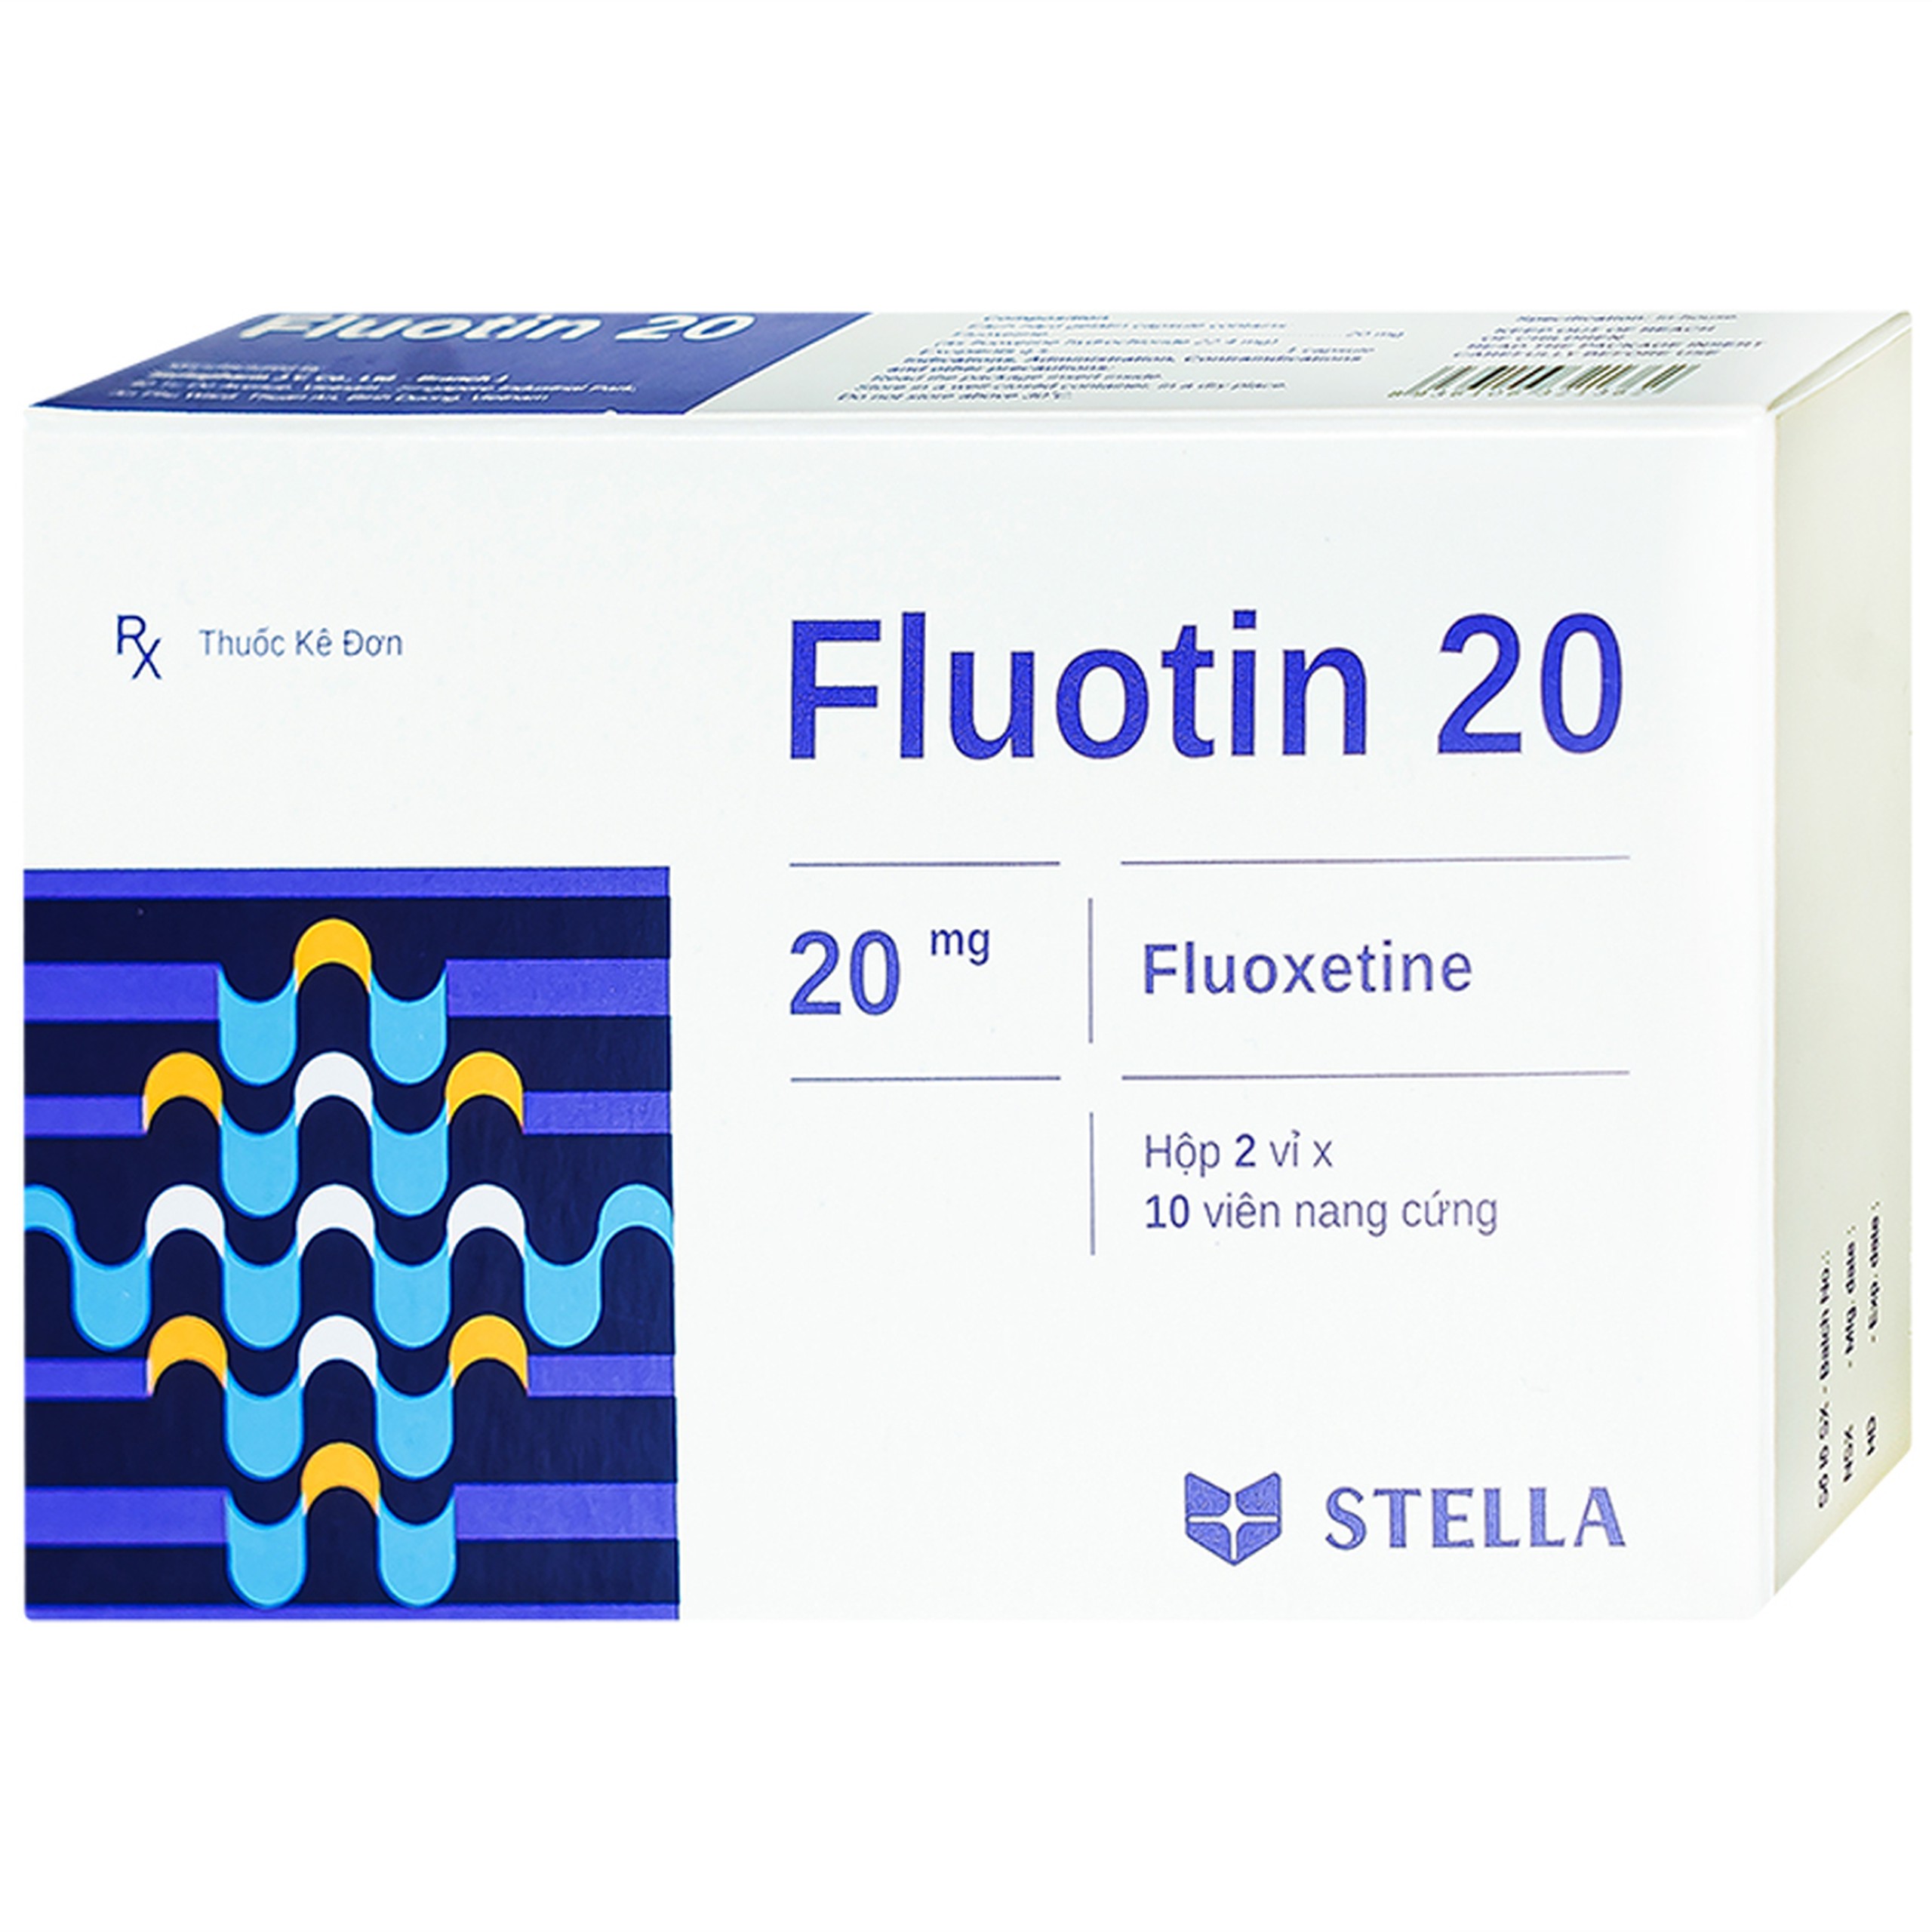 Thuốc Fluotin 20 Stella điều trị trầm cảm, rối loạn xung lực cưỡng bức ám ảnh (2 vỉ x 10 viên)